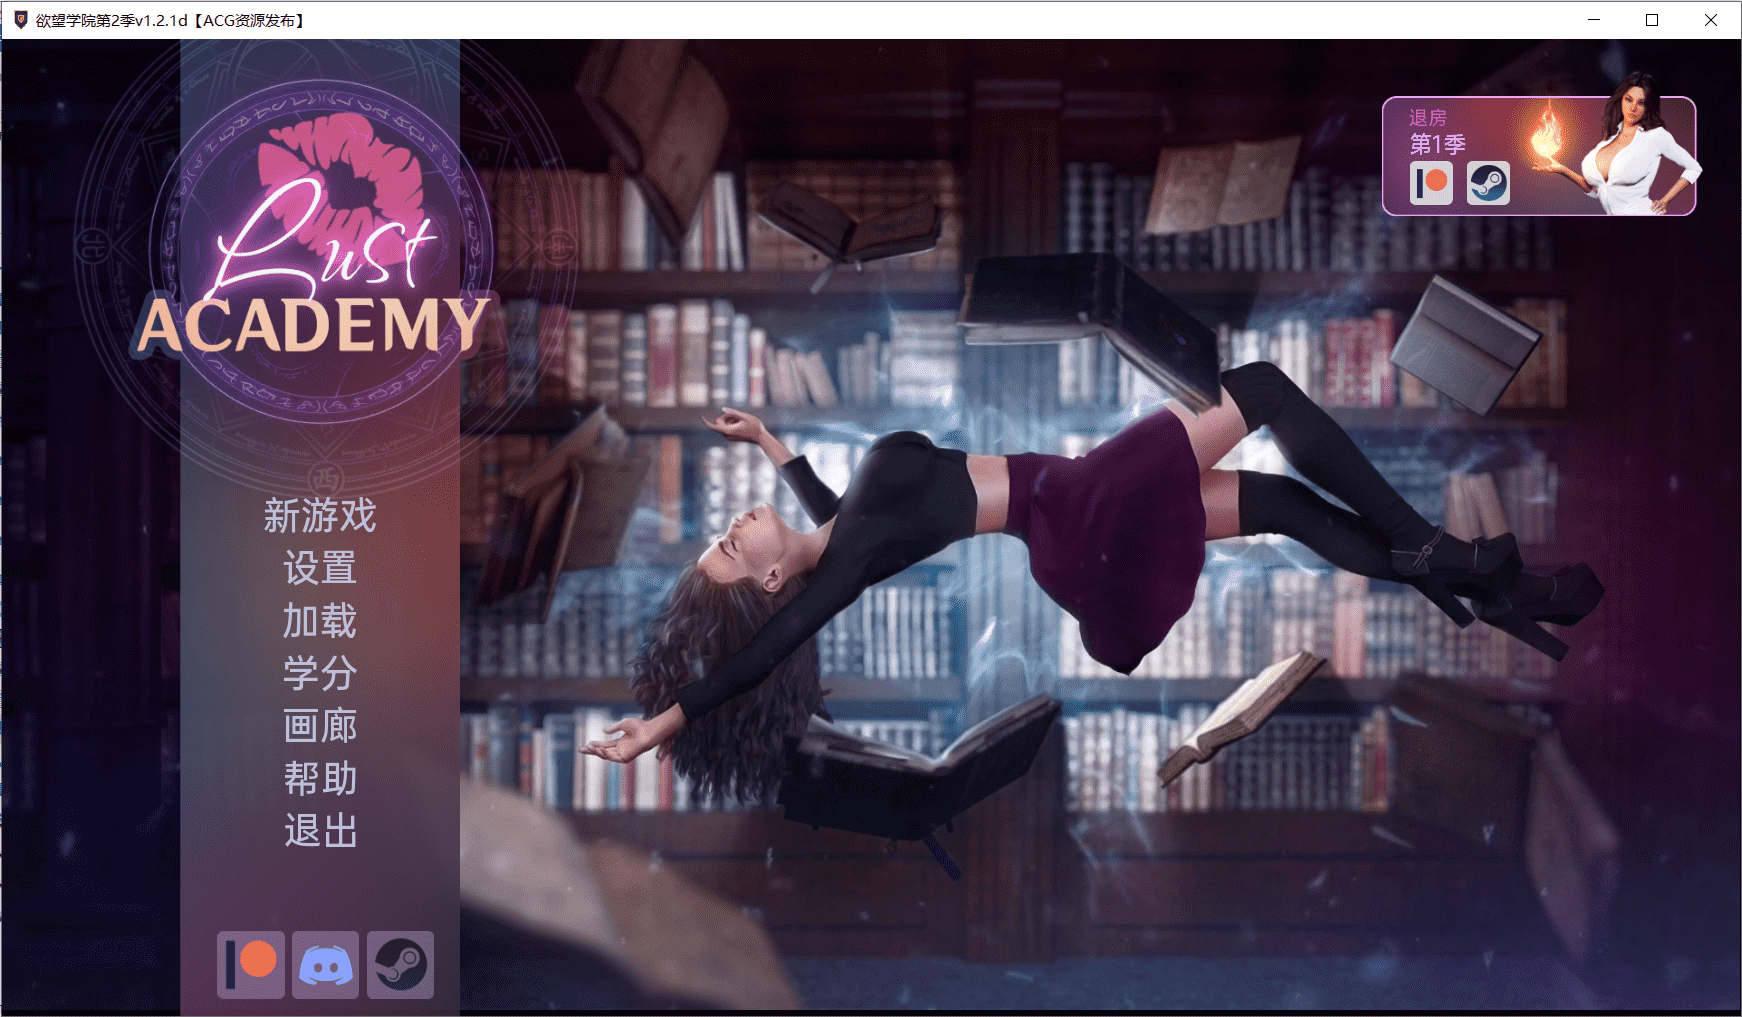 【欧美SLG/官中/动态】欲望学院 Lust Academy 第二季V1.2.1d 汉化版【PC+安卓/1.5G】-小皮ACG-二次元资源分享